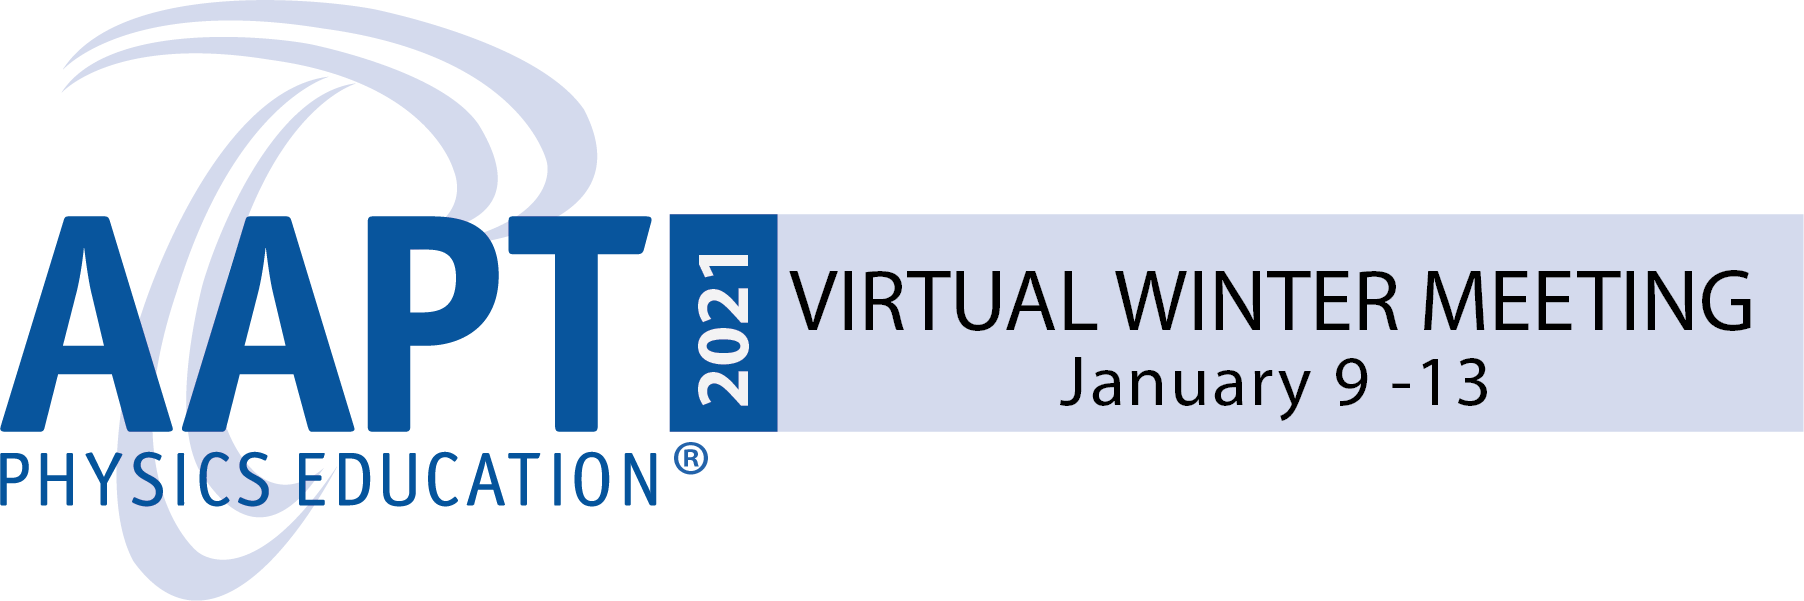 2021 Virtual Winter Meeting logo